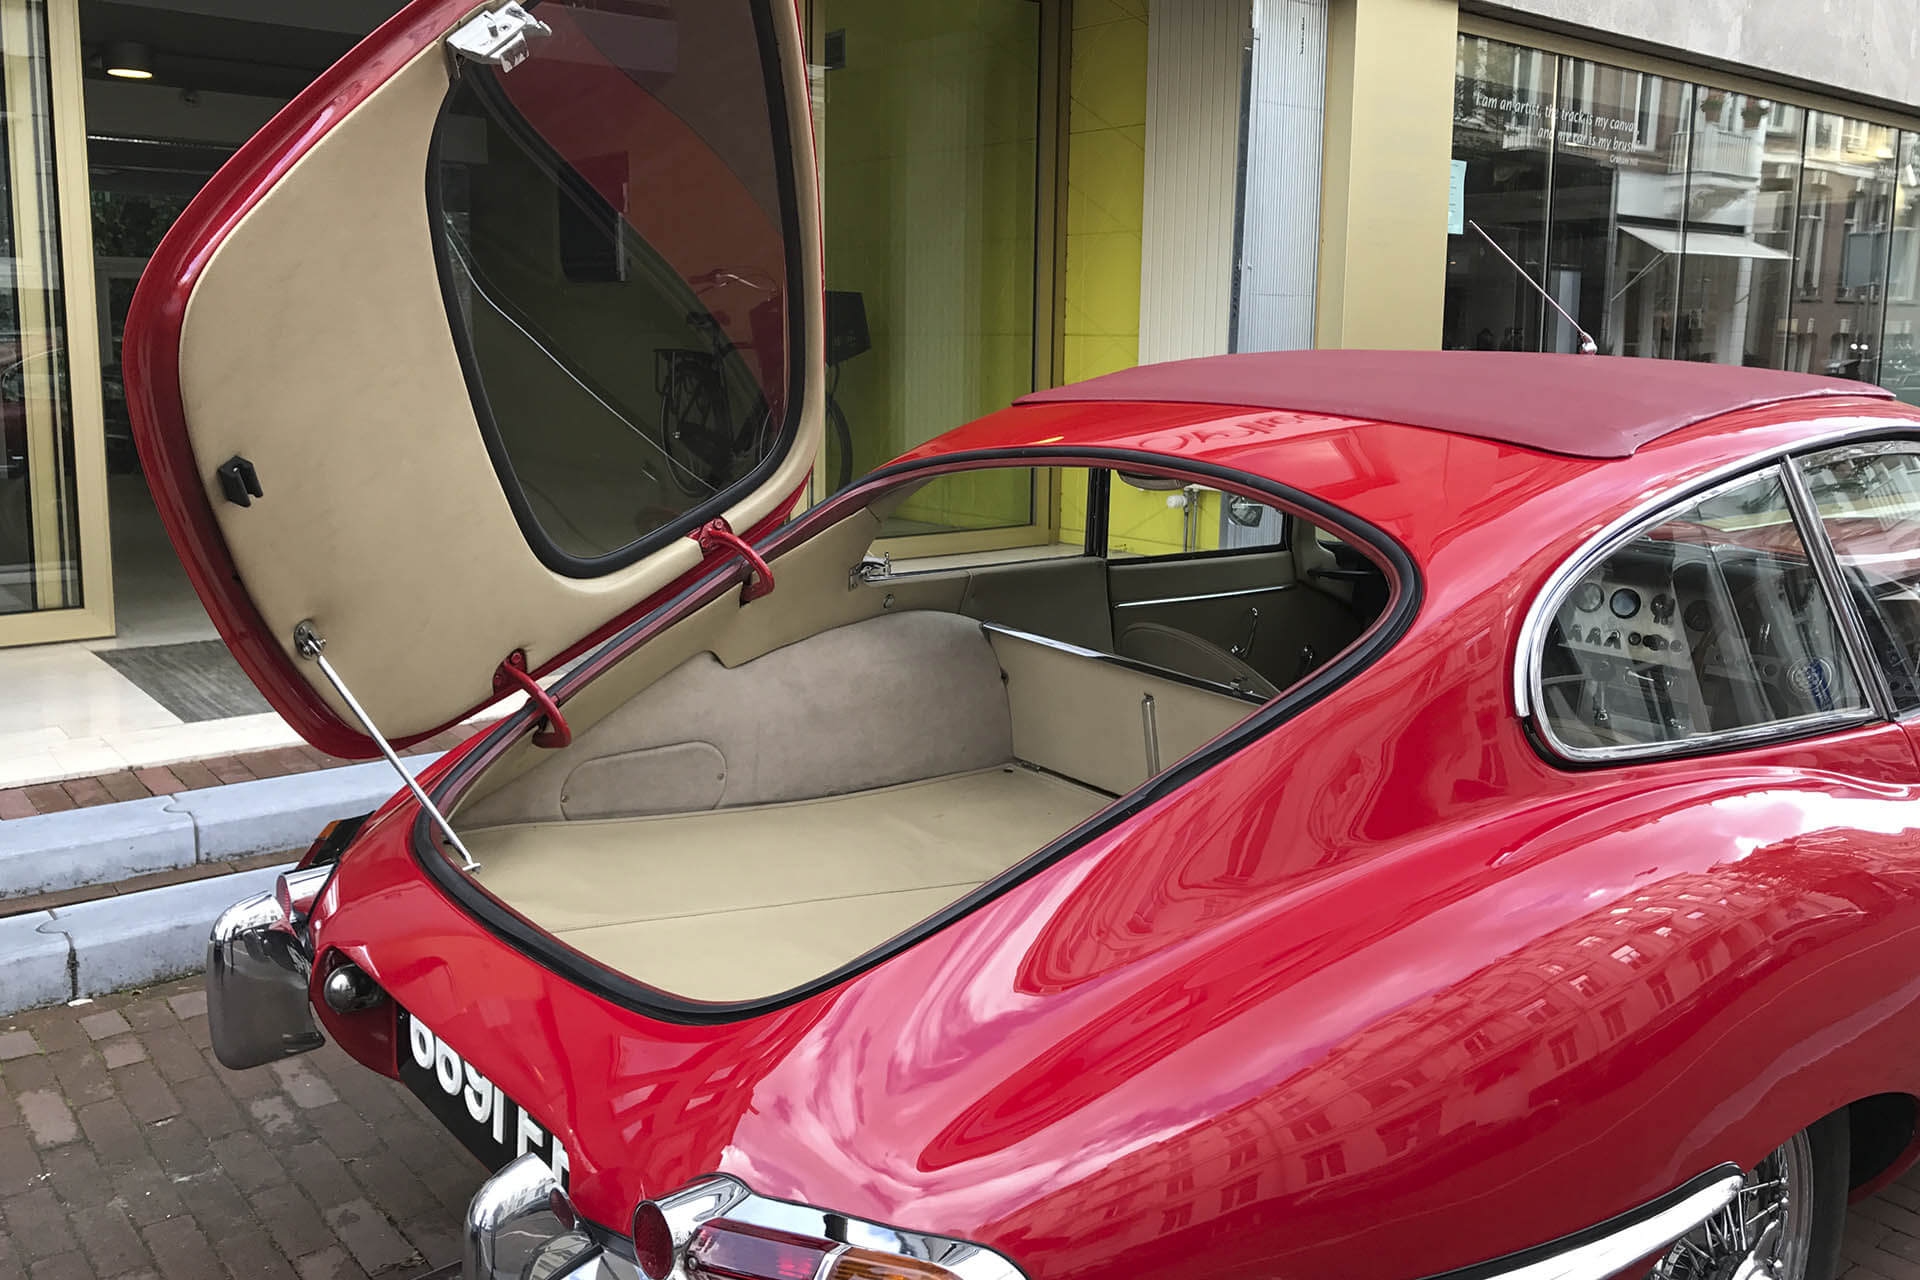 Real Art On Wheels | 1962 Jaguar E-Type FHC 3.8 Series I